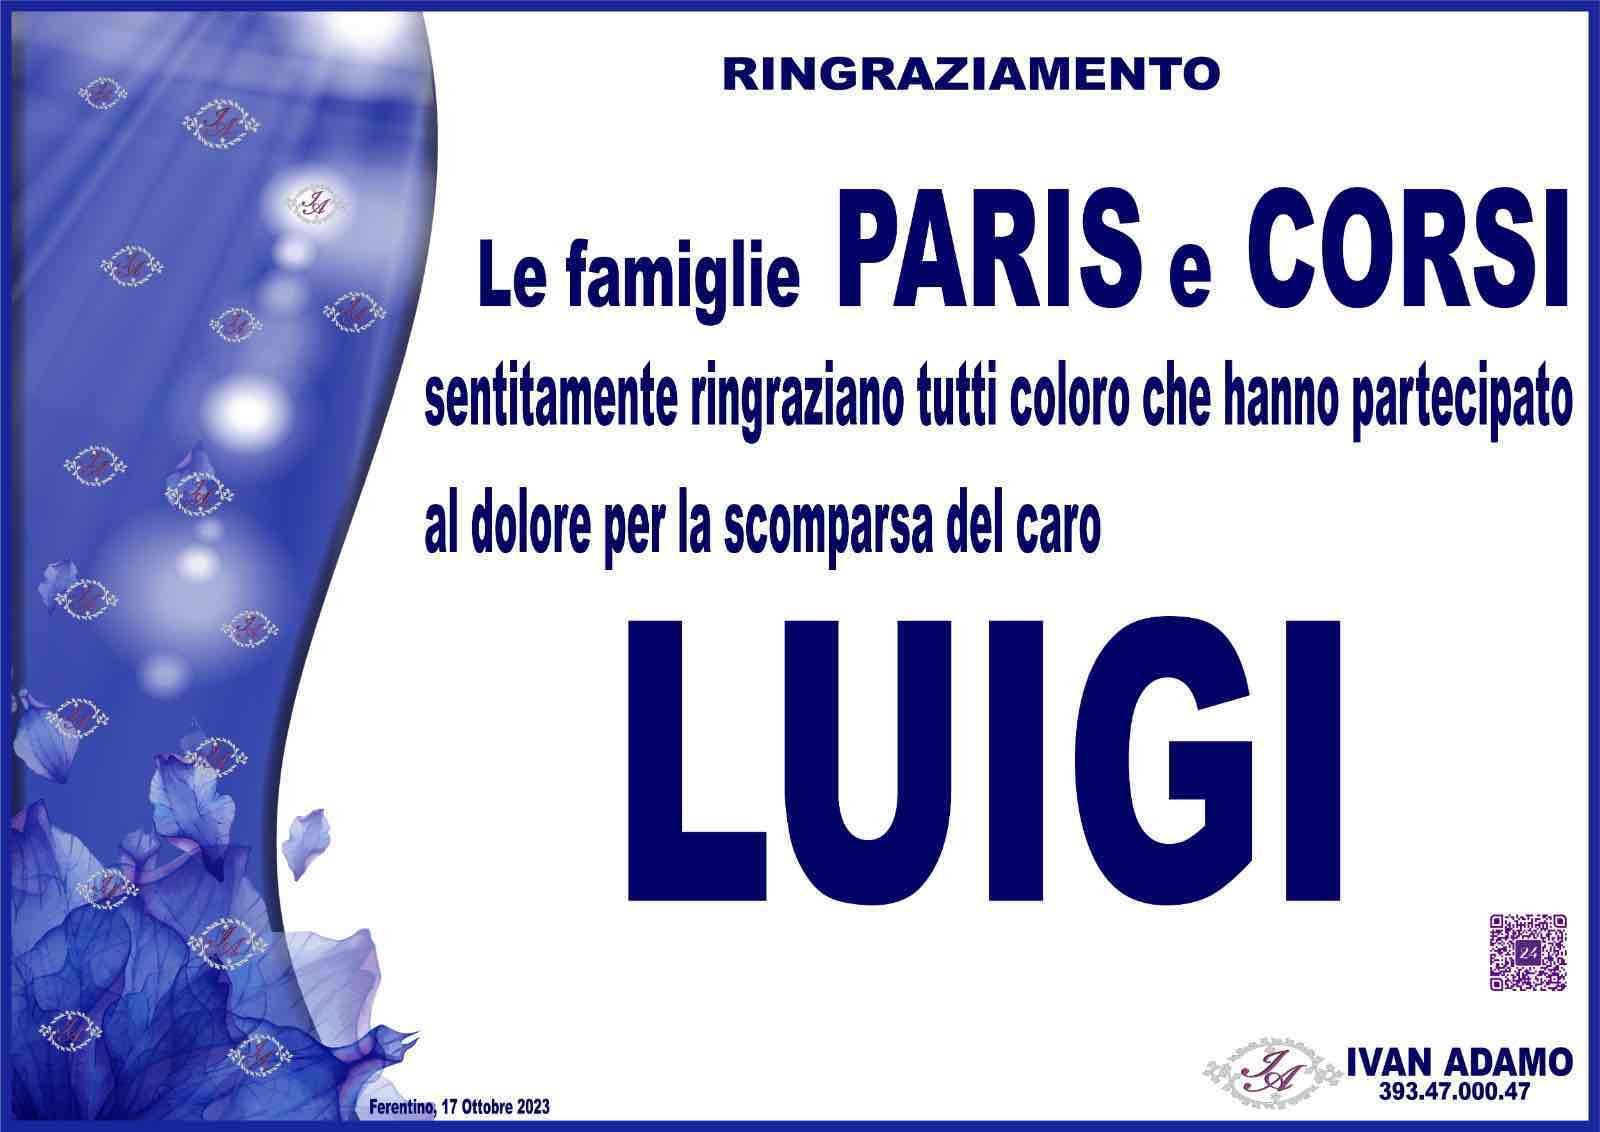 Luigi Paris